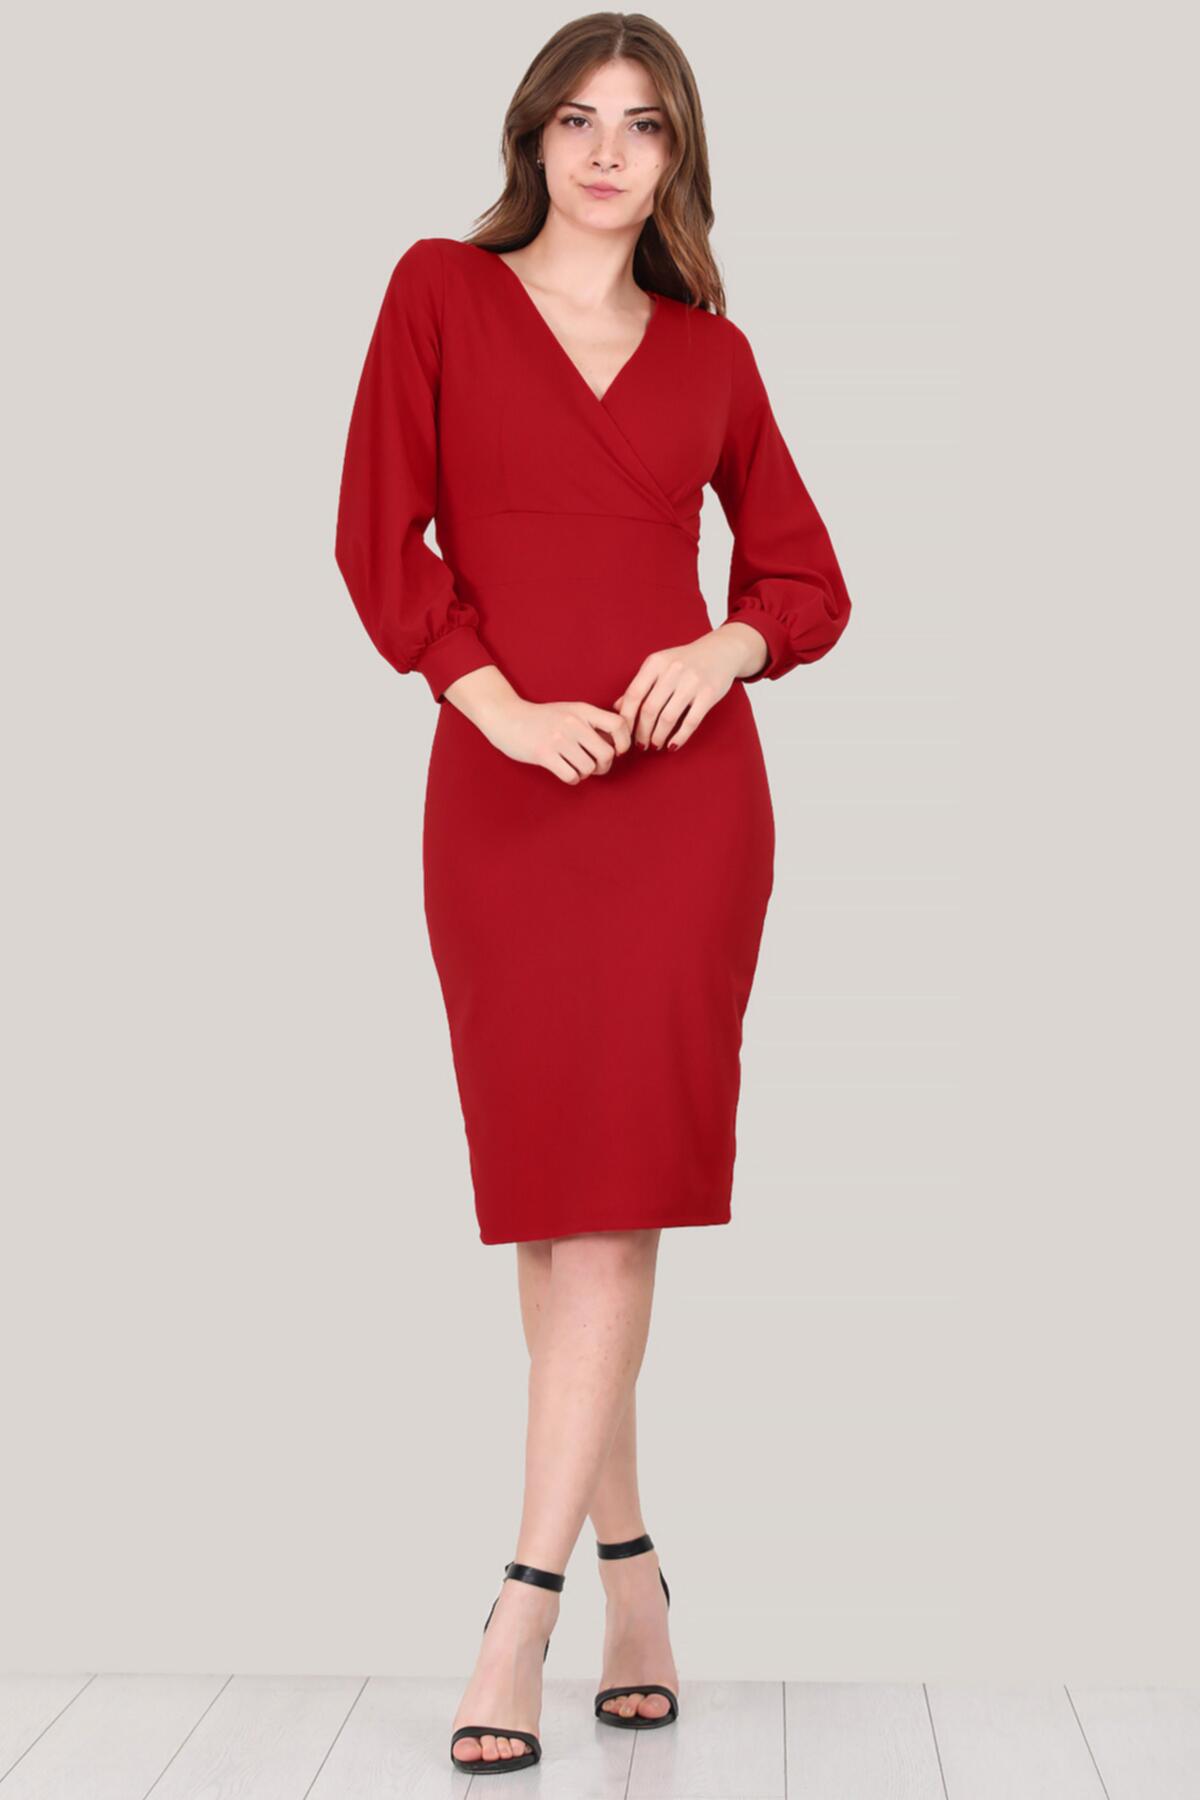 Kadın Uzun Kol Kısa Elbise Kırmızı | Patırtı